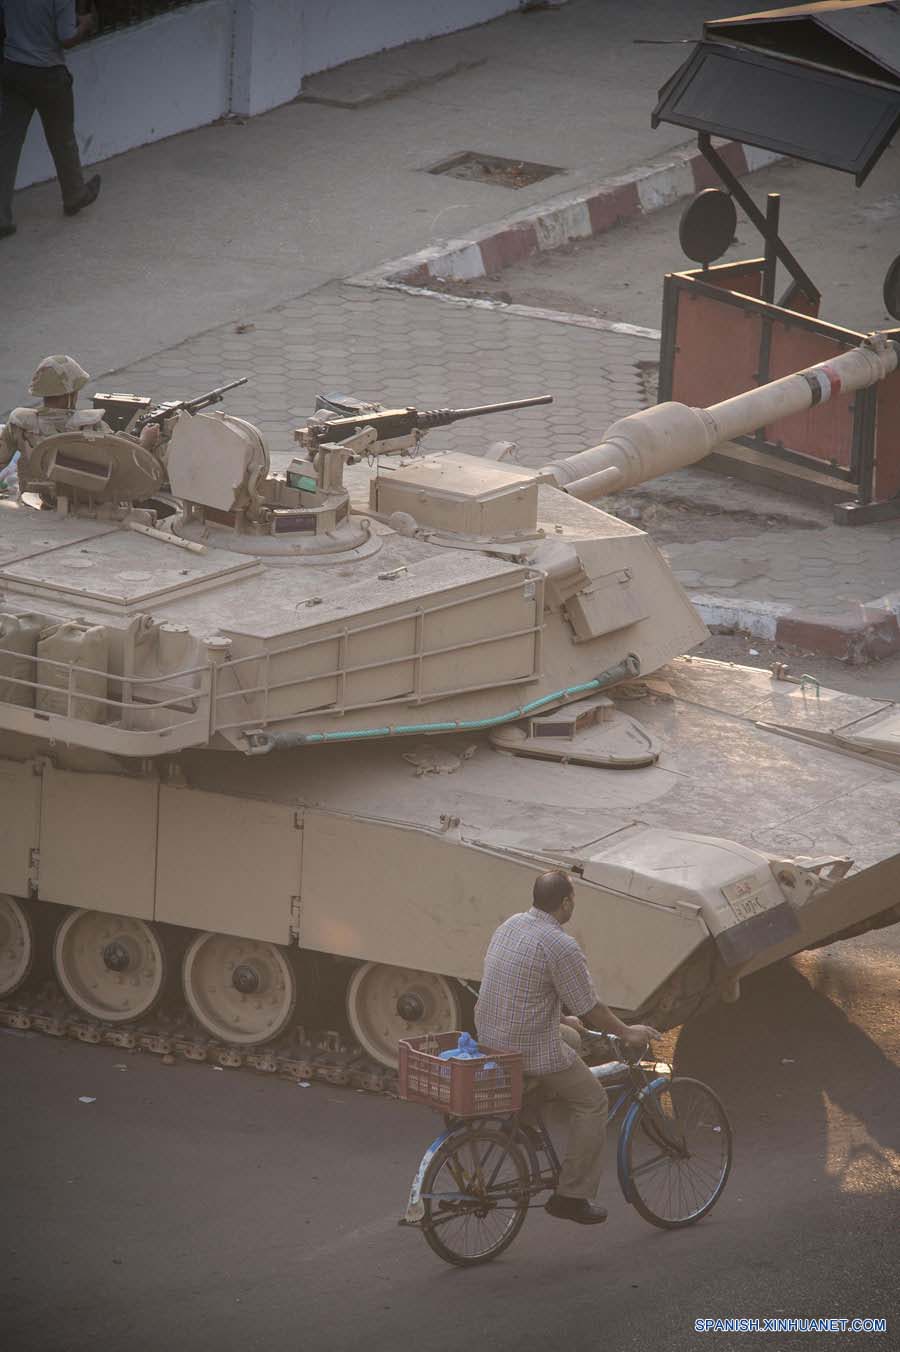 Asciende a 525 cifra de muertos por enfrentamientos en Egipto